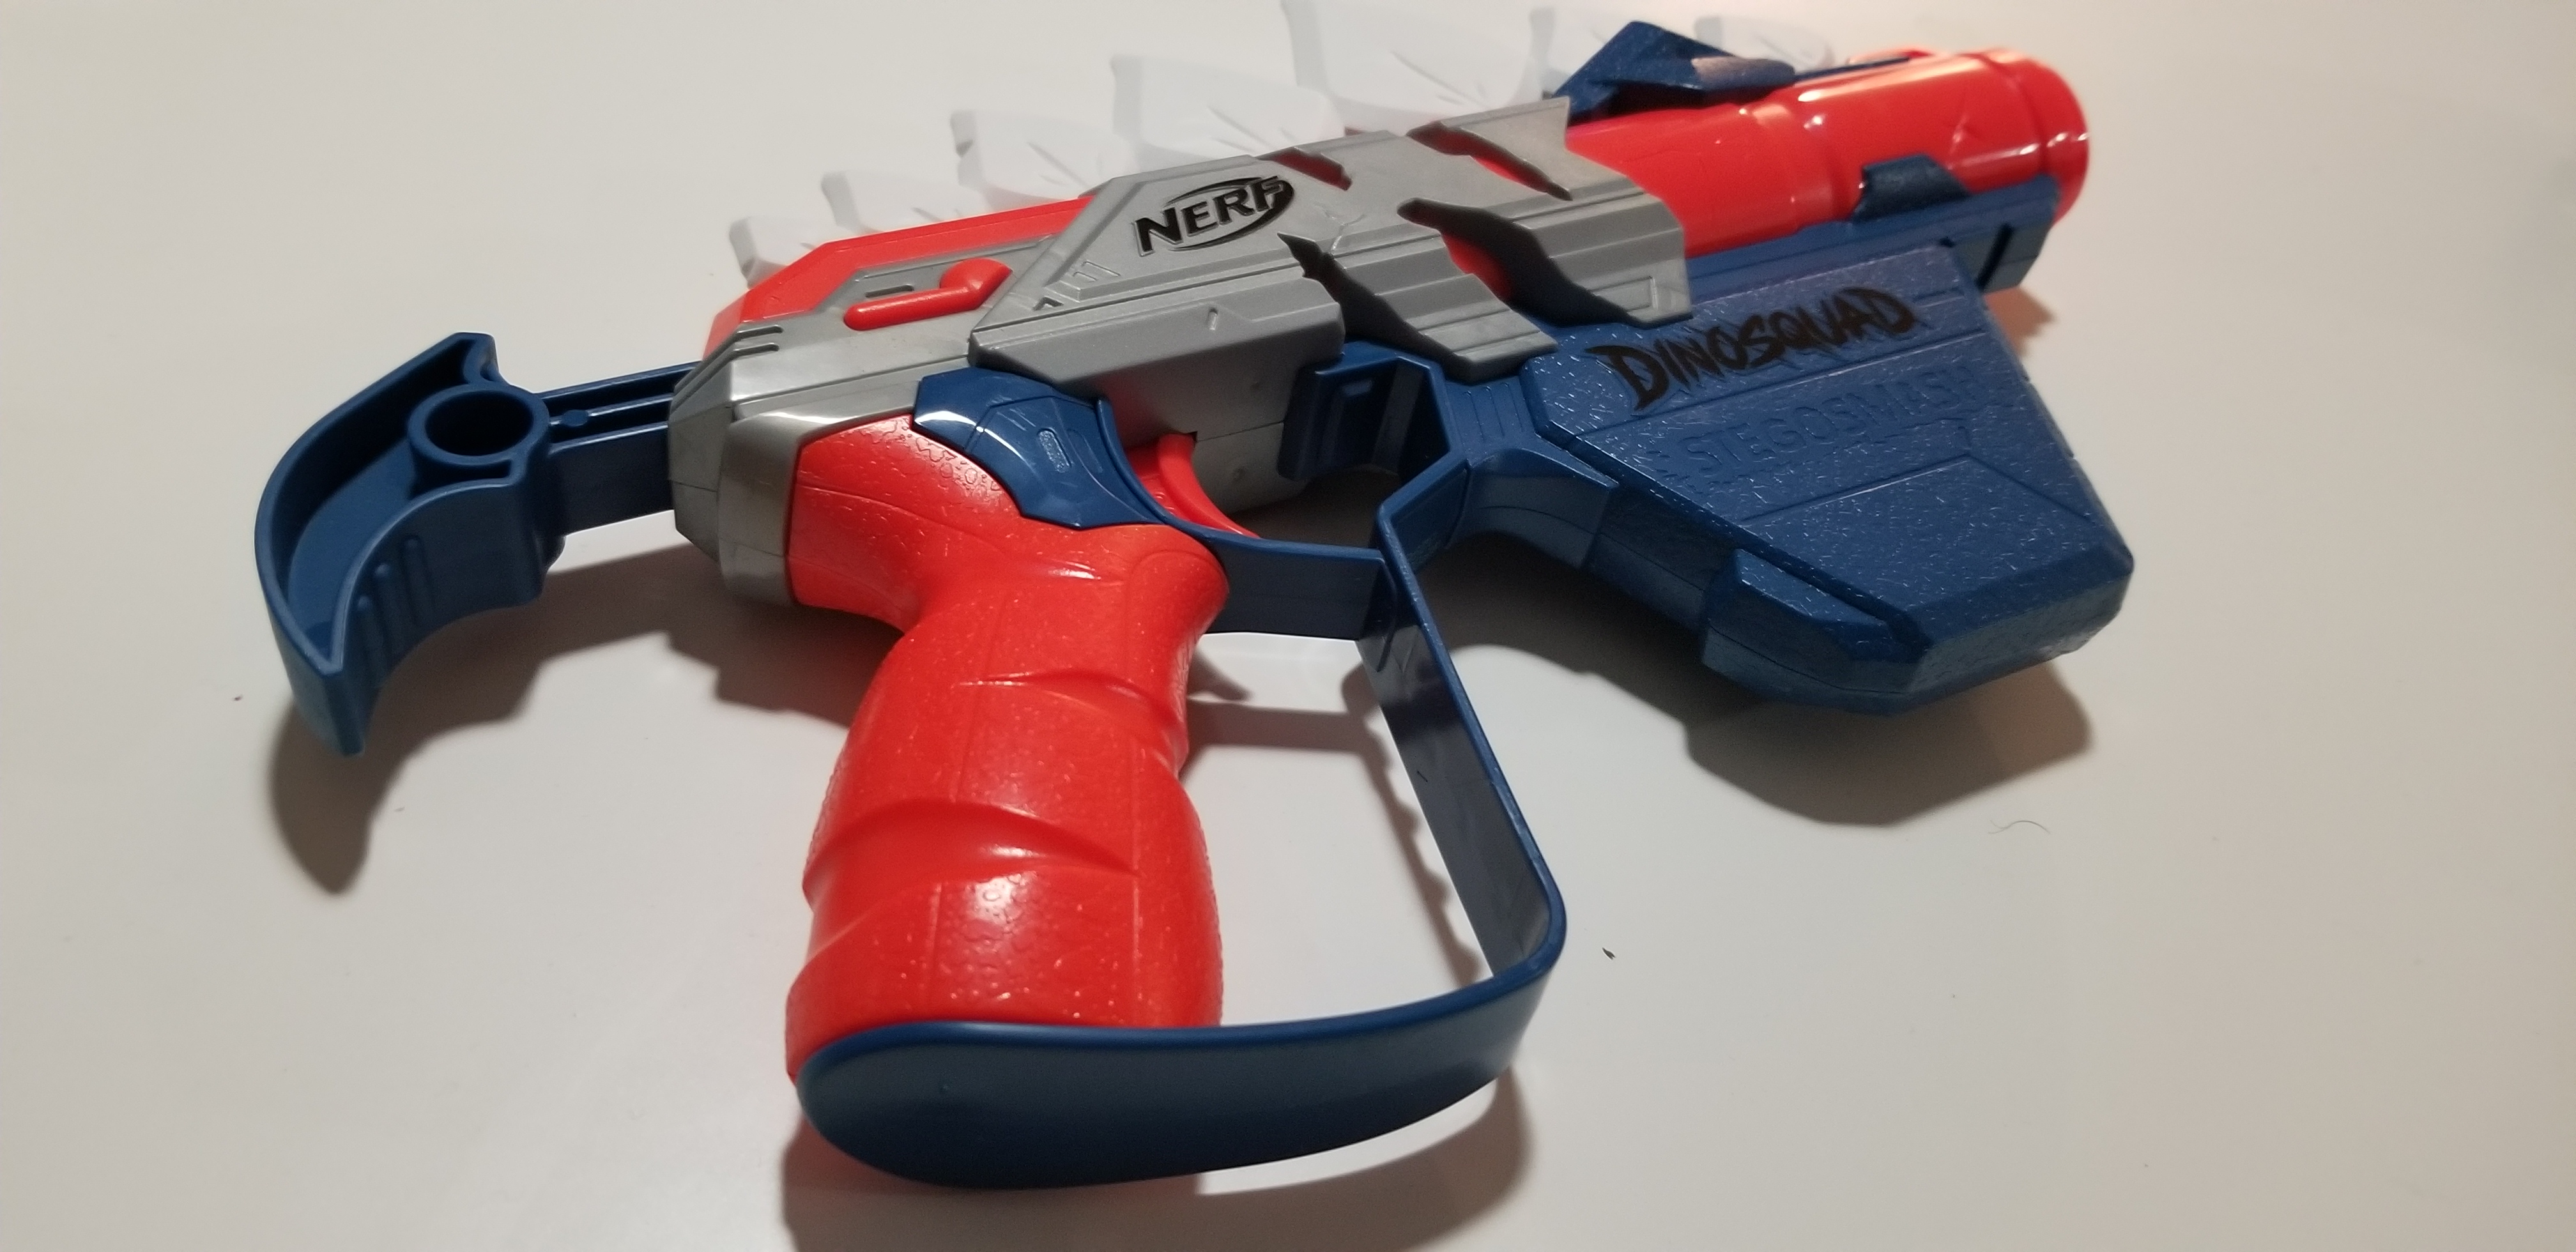 Nerf Halo Mangler Dart Blaster, Pull-Back Priming Handle, Includes